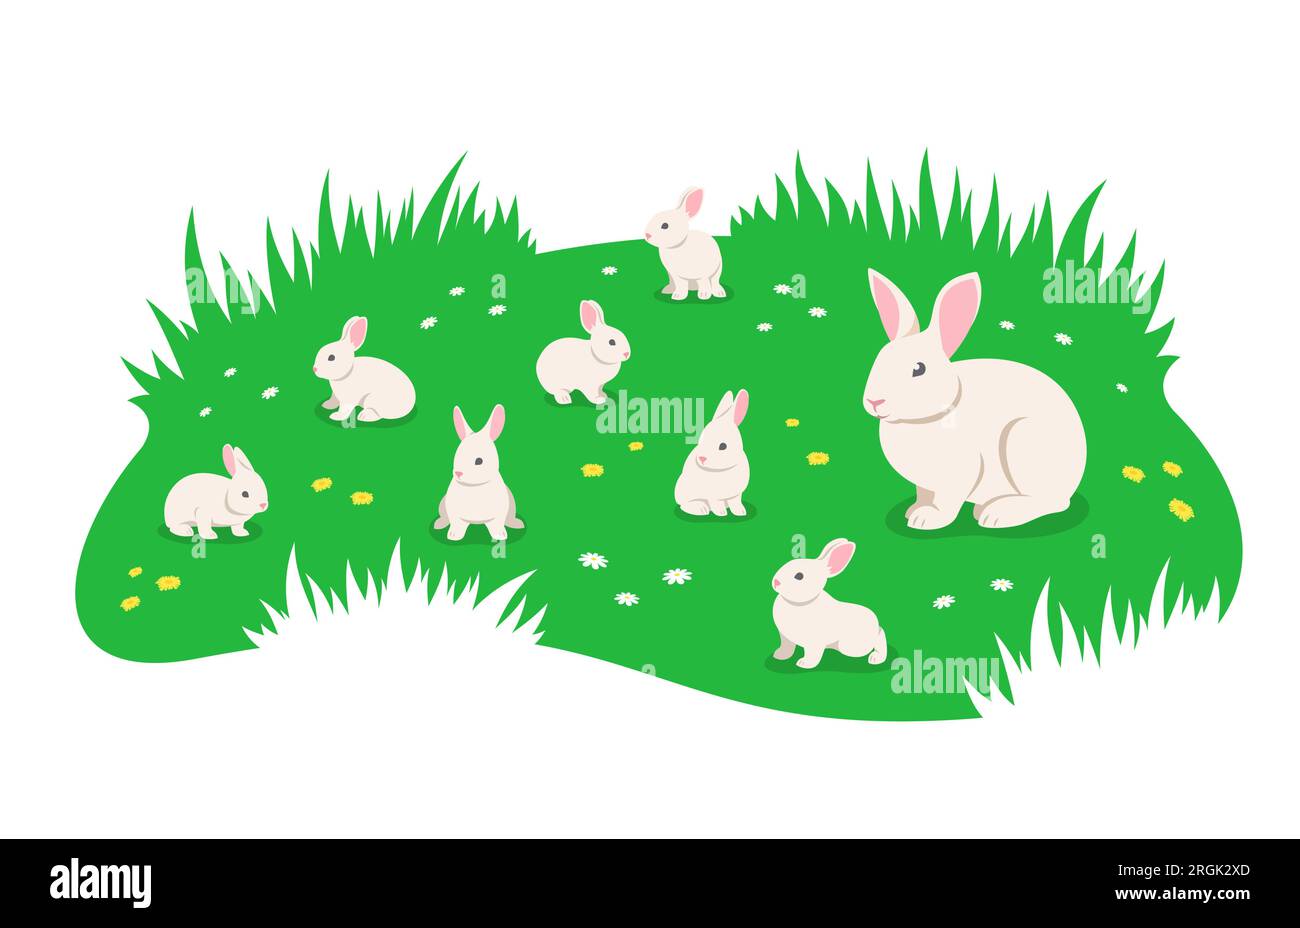 Conejo de la madre con los conejos lindos del bebé que pastan en el prado verde del verano. Pequeños conejitos adorables juguetones pastando en hierba verde. Simple plana de dibujos animados i. Ilustración del Vector